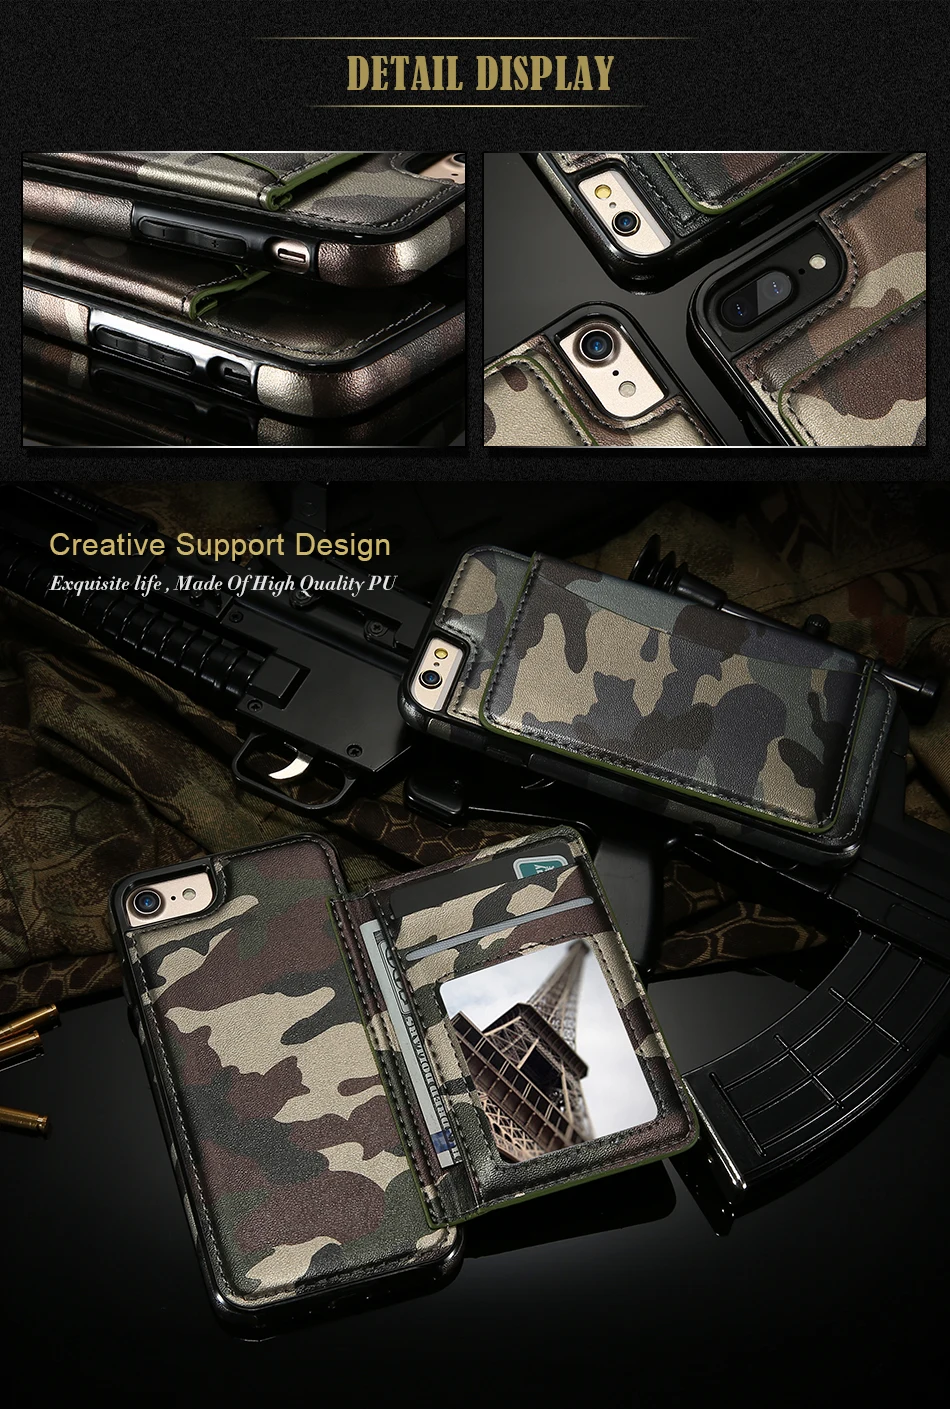 Чехол KISS, камуфляжный кожаный чехол для iPhone 6, 6s, 7, 8 Plus, чехол со слотом для iPhone 6, 7, 8 Plus, военная подставка, держатель, задняя крышка